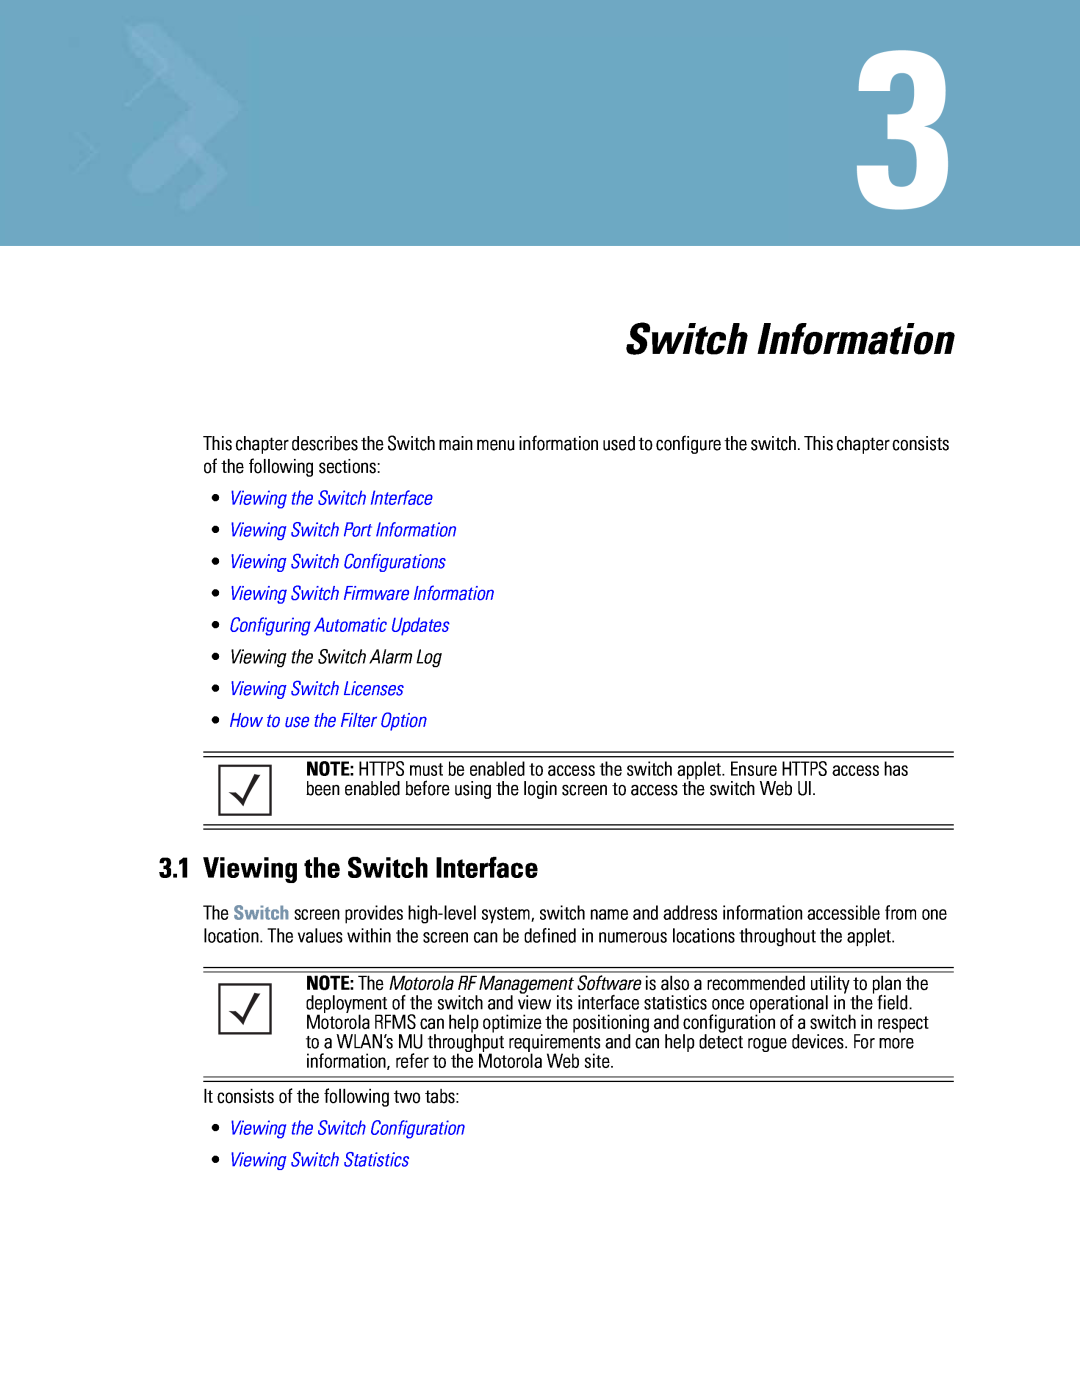 Motorola WS5100 manual Switch Information, •Viewing the Switch Interface, •Viewing Switch Port Information 